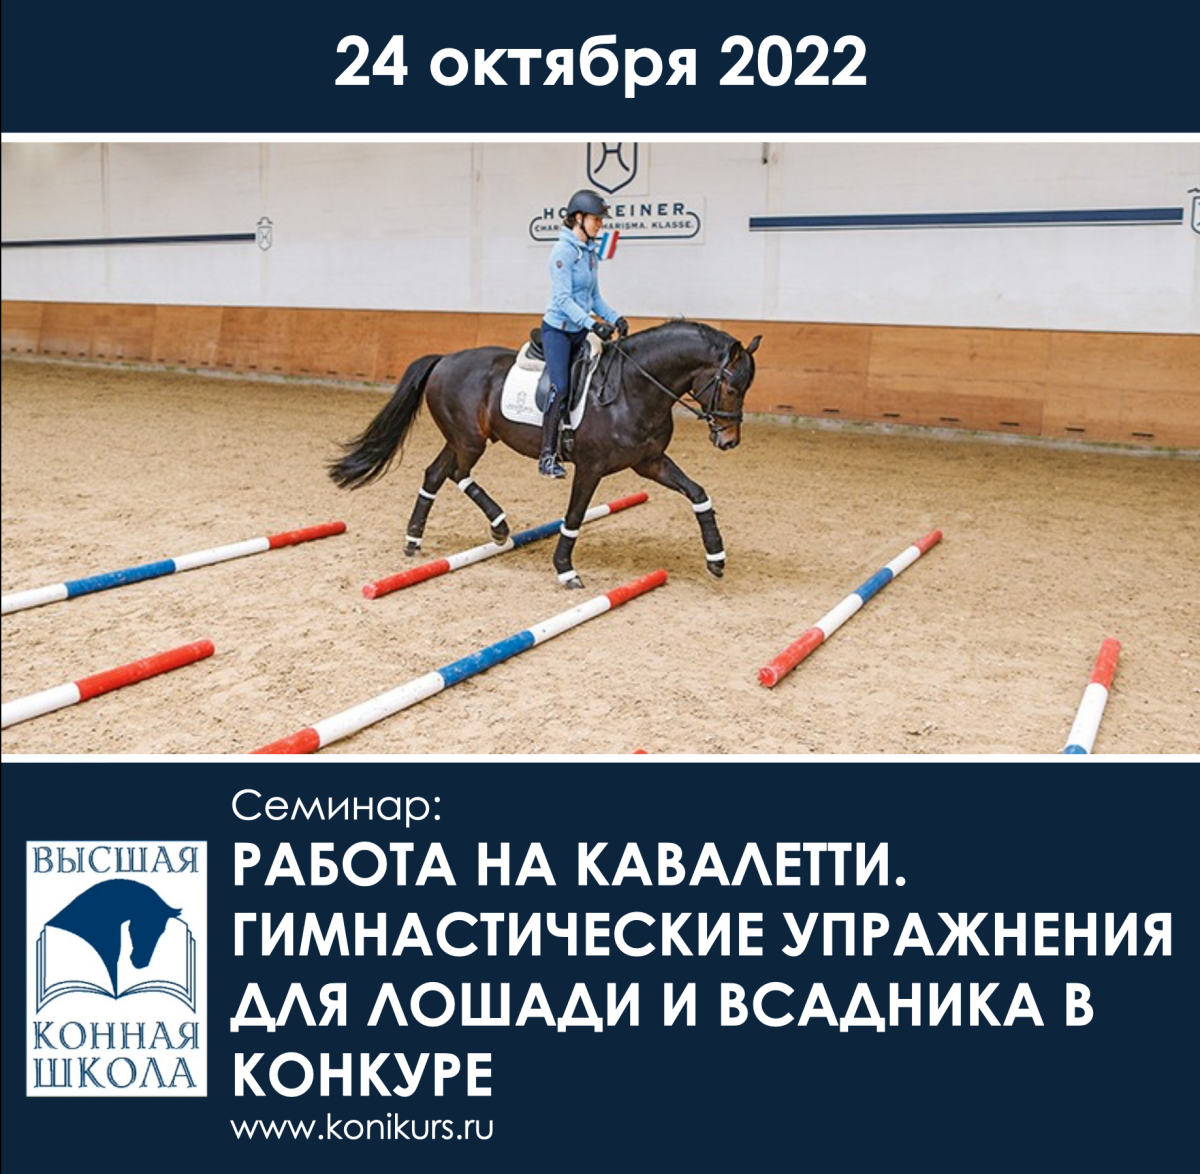 Приглашаем 24 октября на семинар: "Работа на кавалетти. Гимнастические упражнения для лошади и всадника в конкуре"!